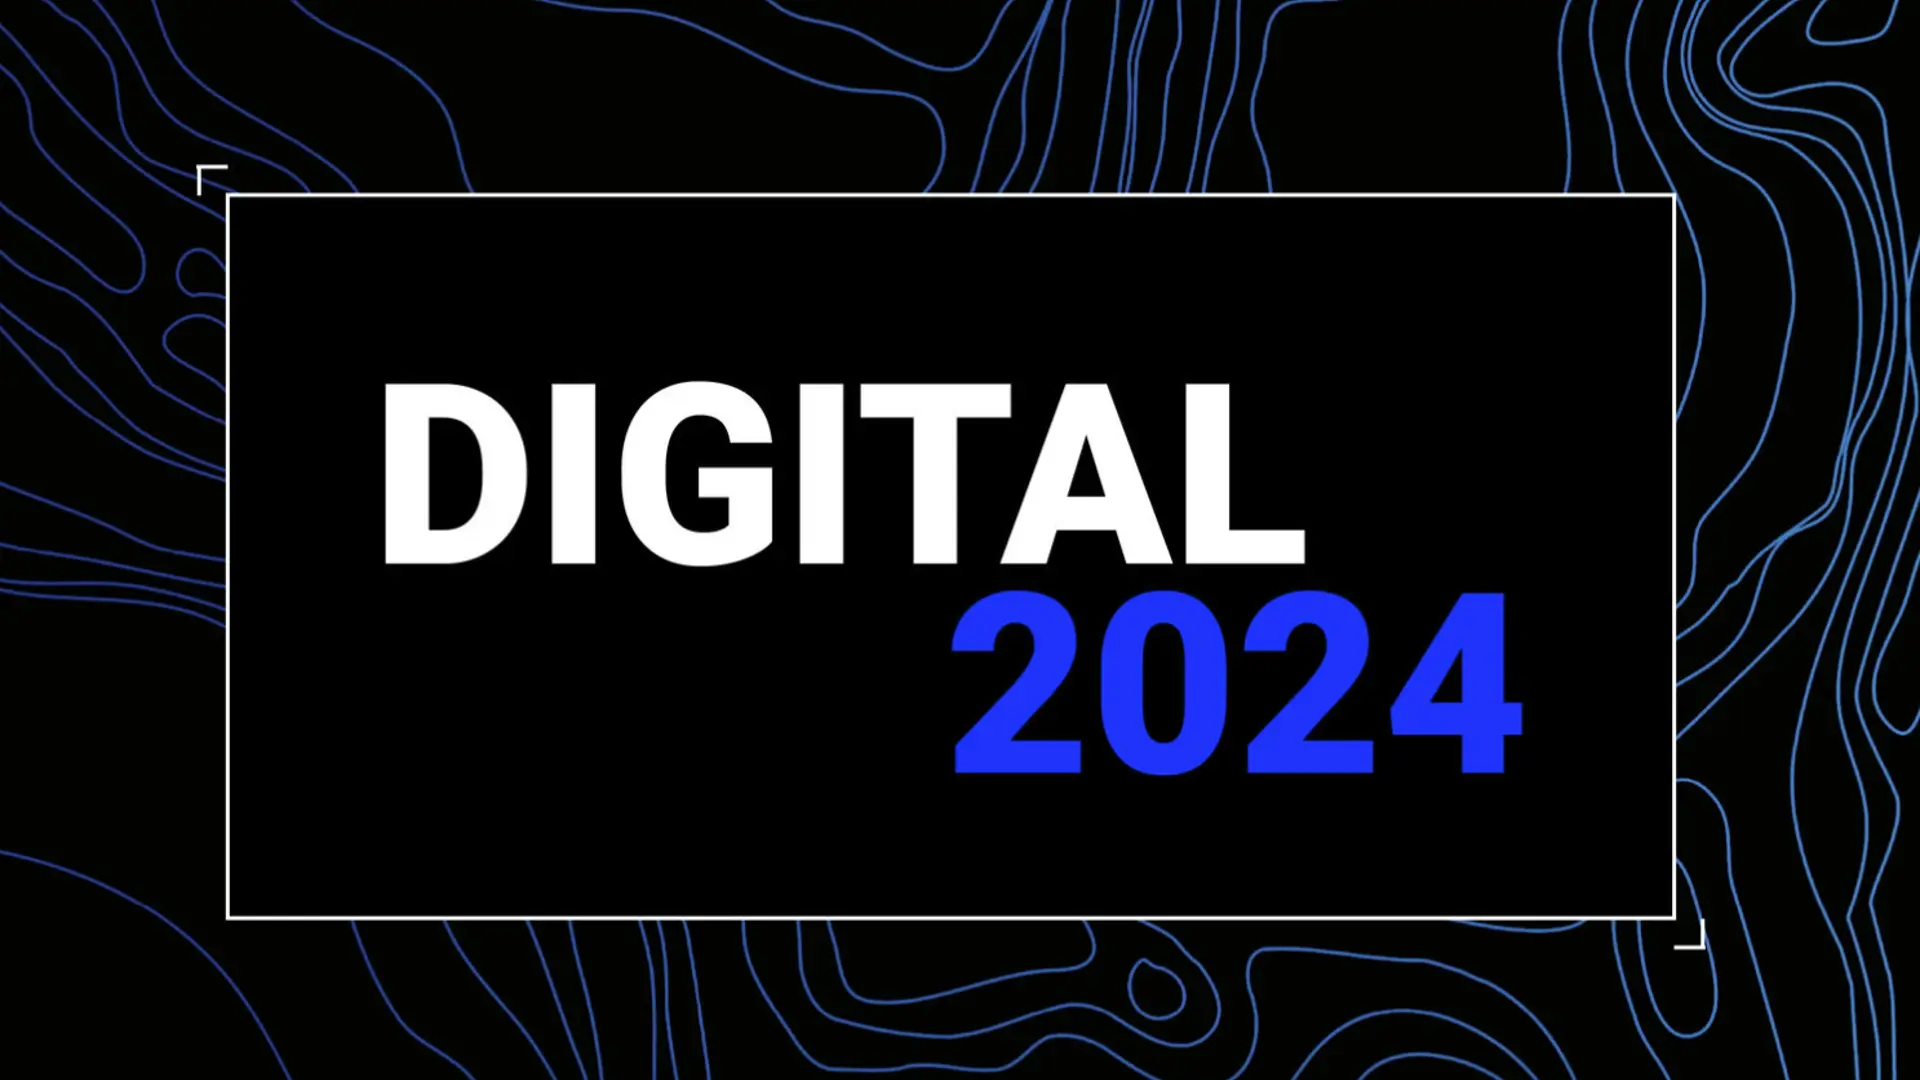 Digital 2024 Global Report